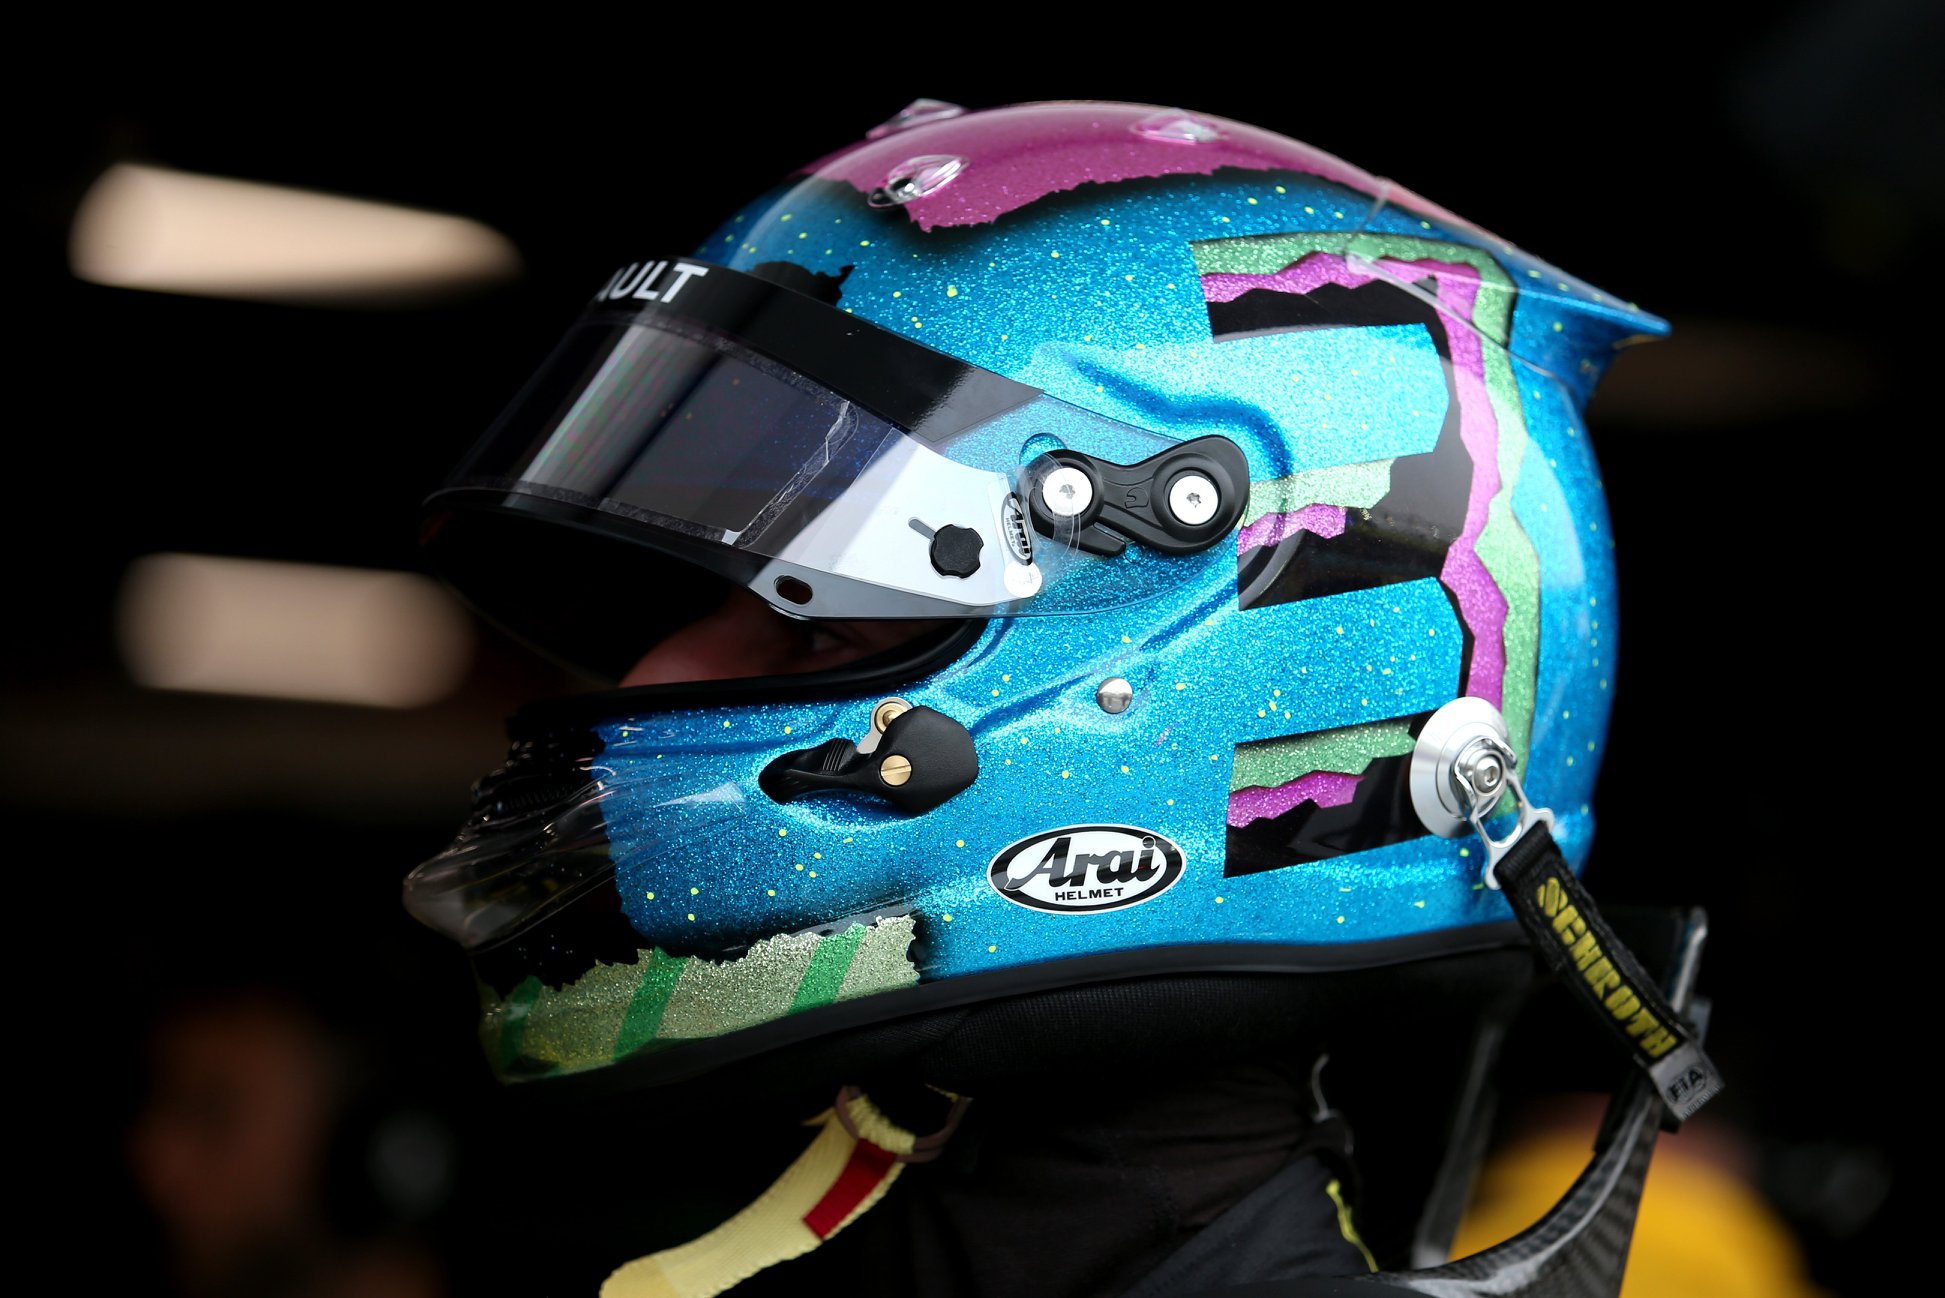 D. Ricciardo 2021 m. dėl čempiono titulo norėtų kovoti atstovaudamas „Renault“ komandai